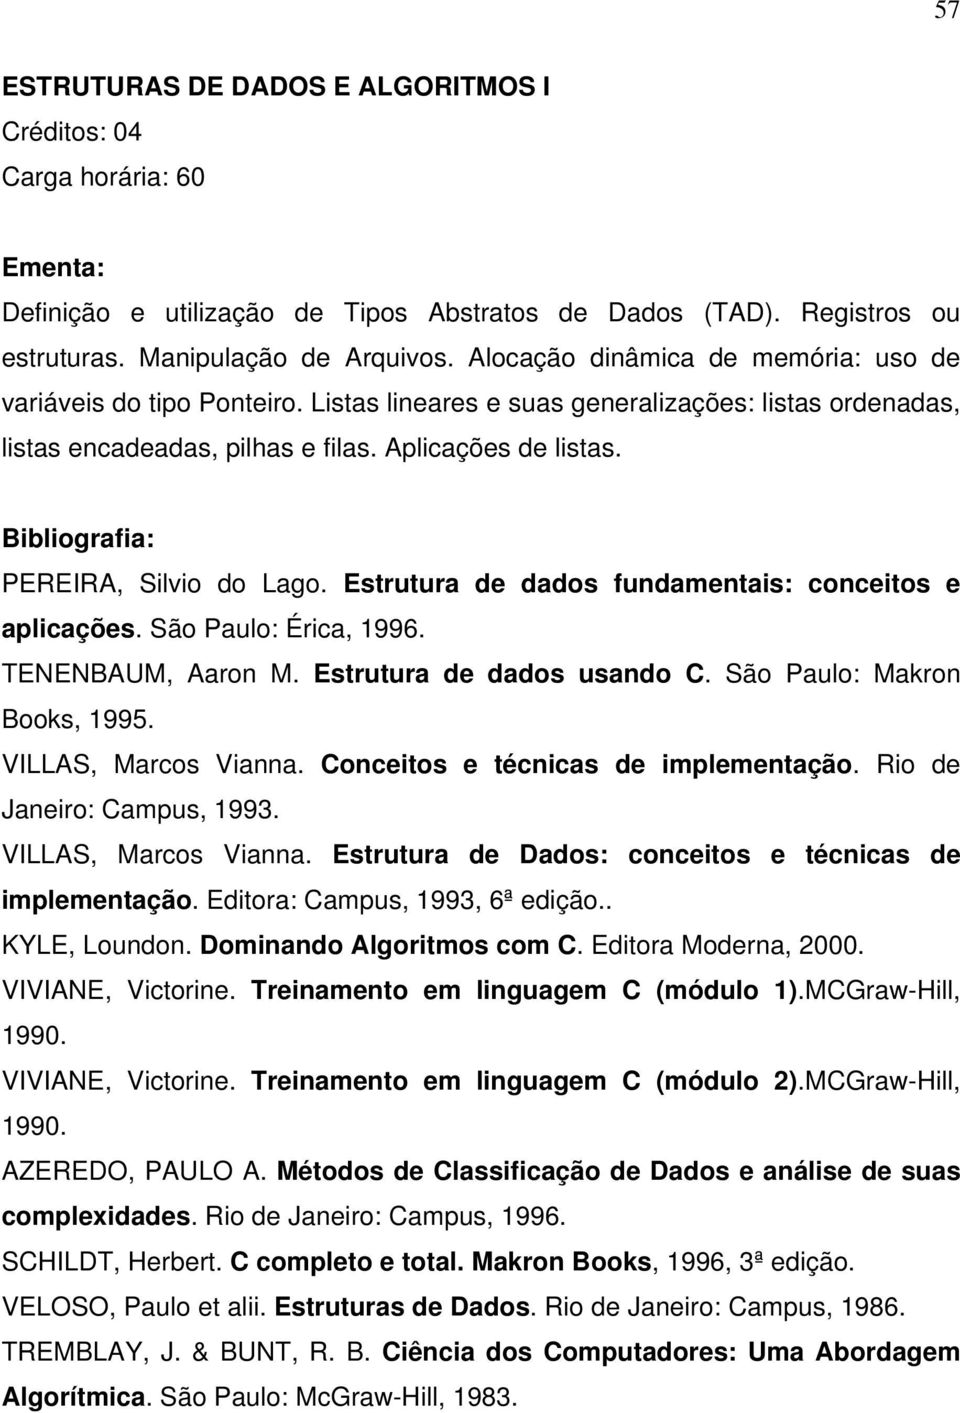 PEREIRA, Silvio do Lago. Estrutura de dados fundamentais: conceitos e aplicações. São Paulo: Érica, 1996. TENENBAUM, Aaron M. Estrutura de dados usando C. São Paulo: Makron Books, 1995.